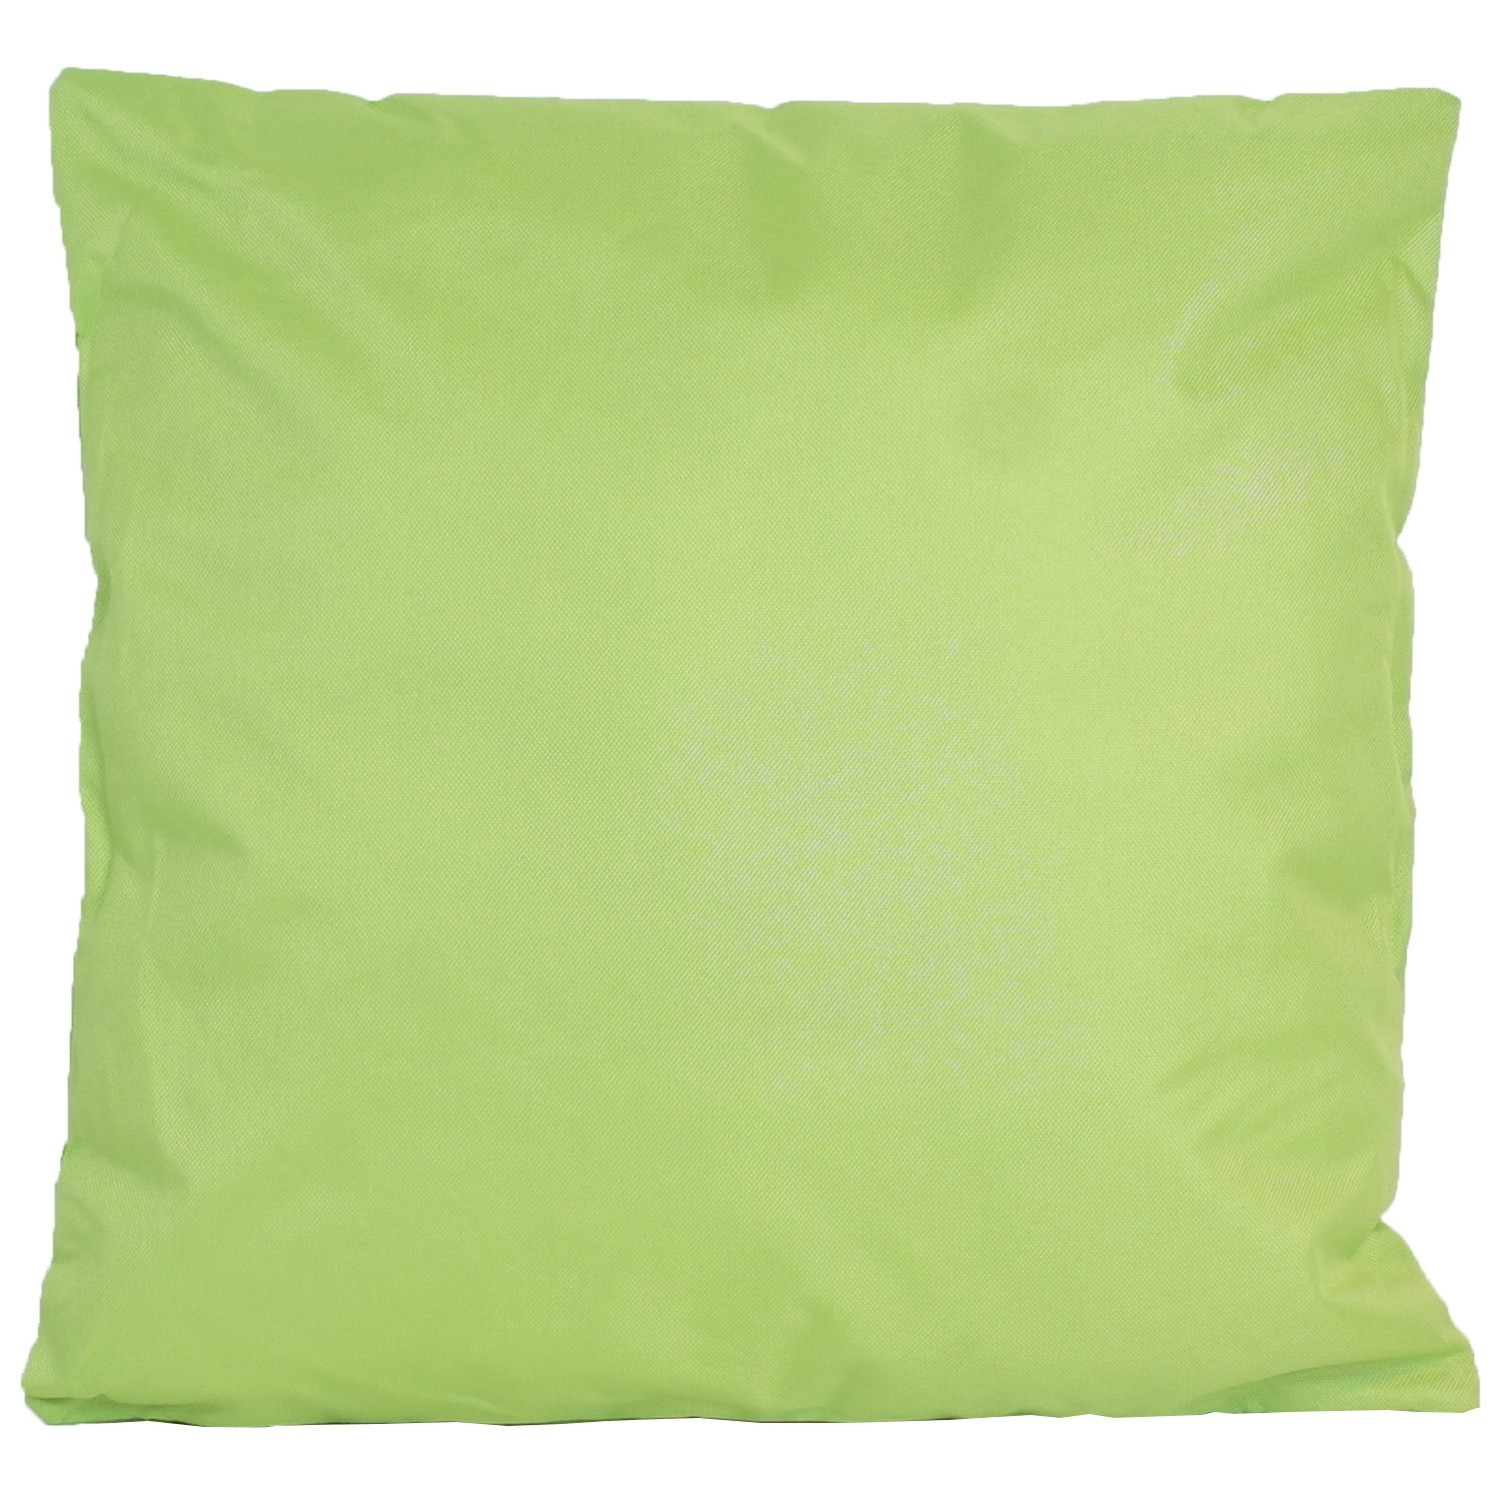 1x Bank-Sier kussens voor binnen en buiten in de kleur groen 45 x 45 cm